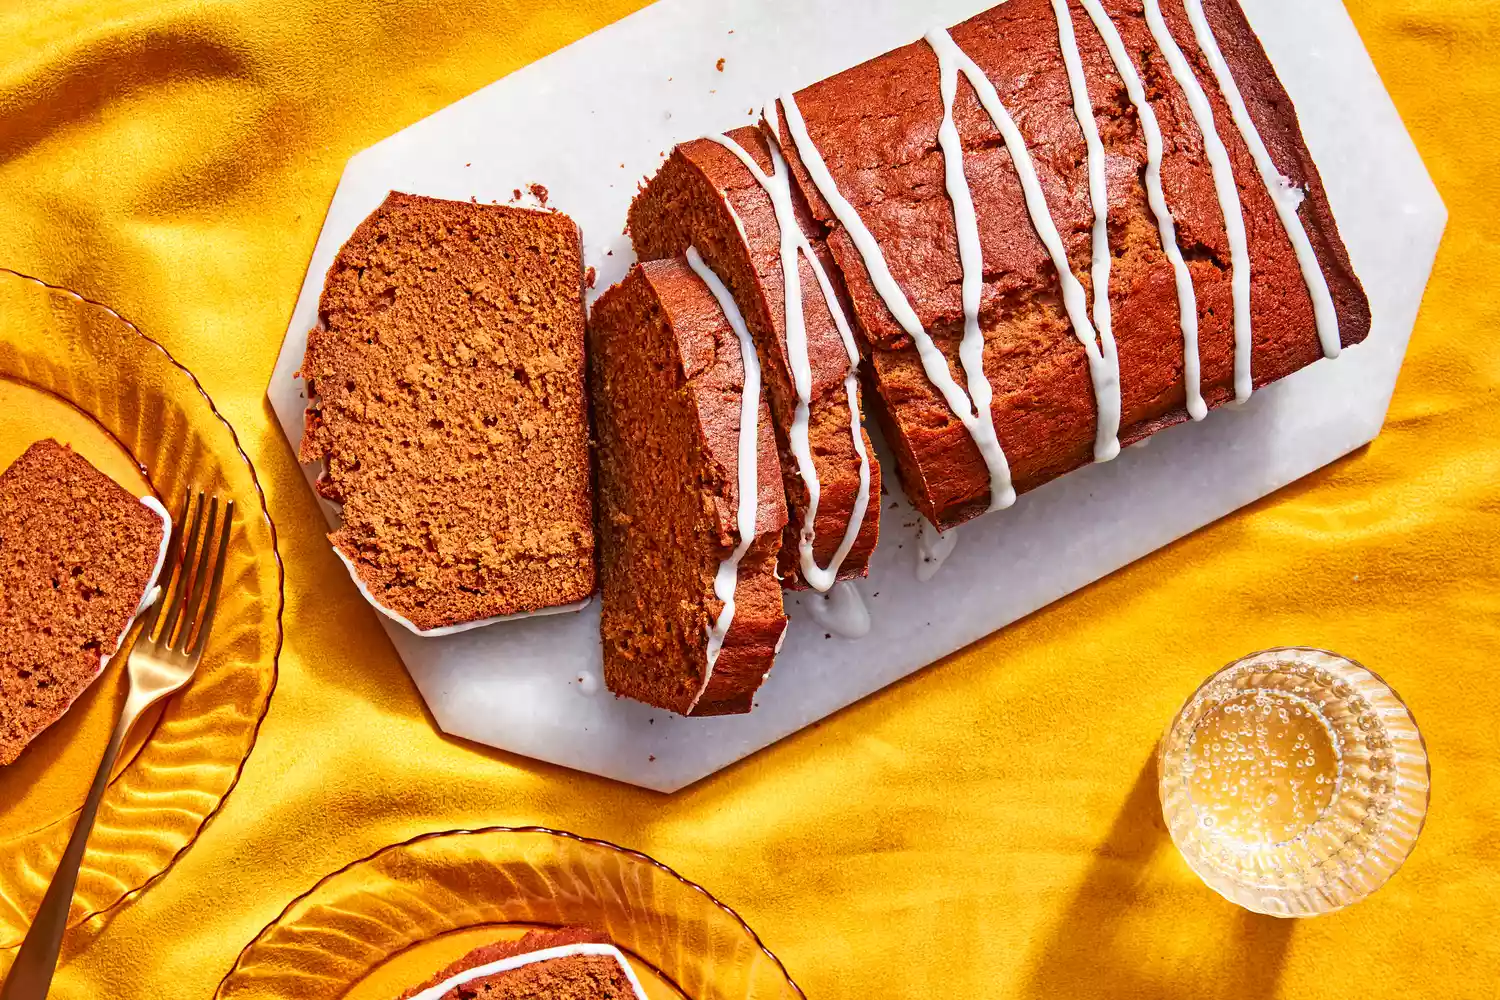 Southern Living Ginger Loaf Cake sliced on a platter to serve